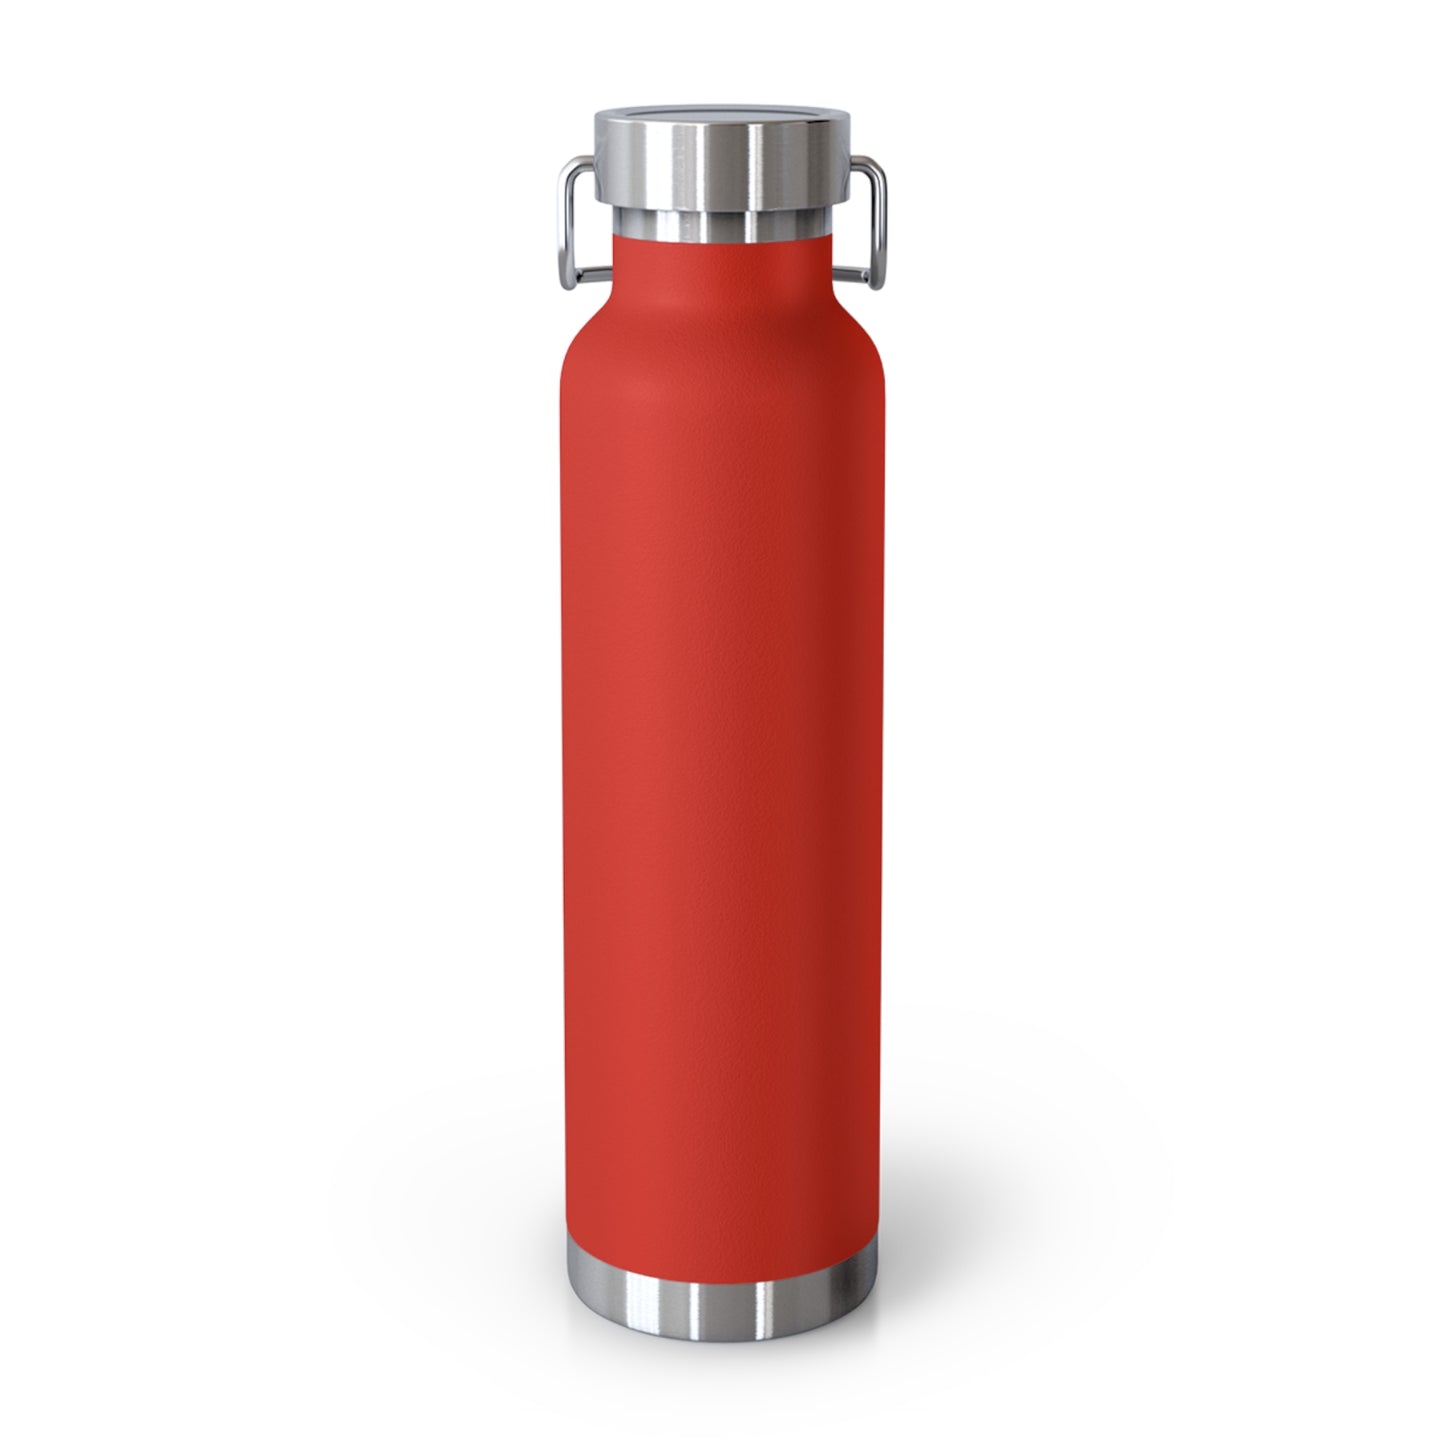 VapeMeds® Copper Vacuum Insulated Bottle, 22oz